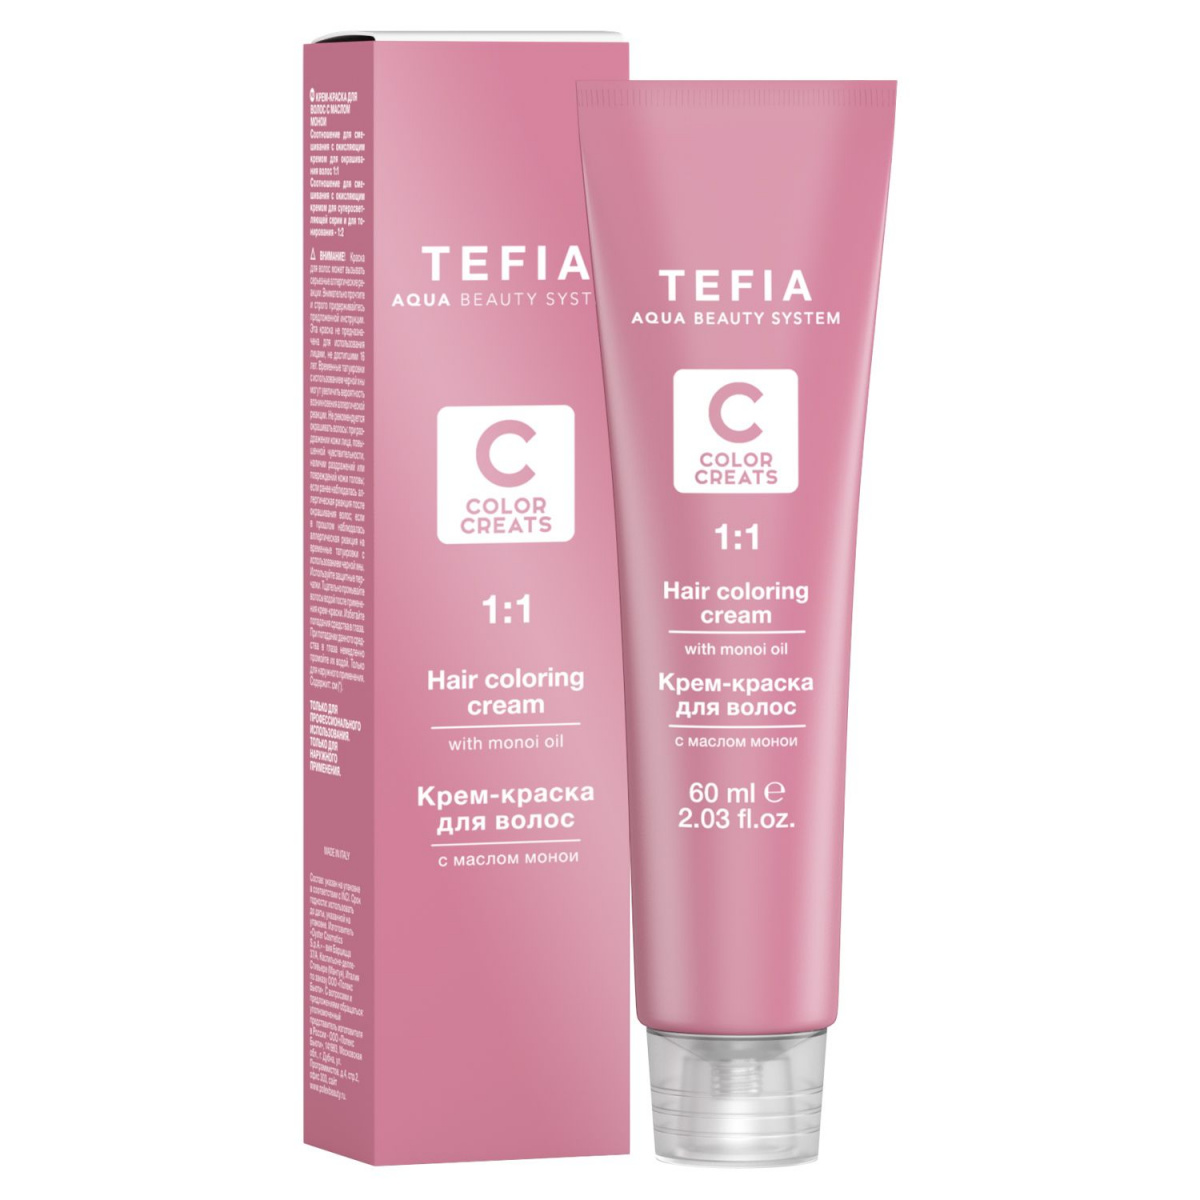 Tefia Color Creats - Крем-краска для волос с маслом монои 12.1 суперосветляющий экстра пепельный 60 мл Tefia (Италия) купить по цене 387 руб.